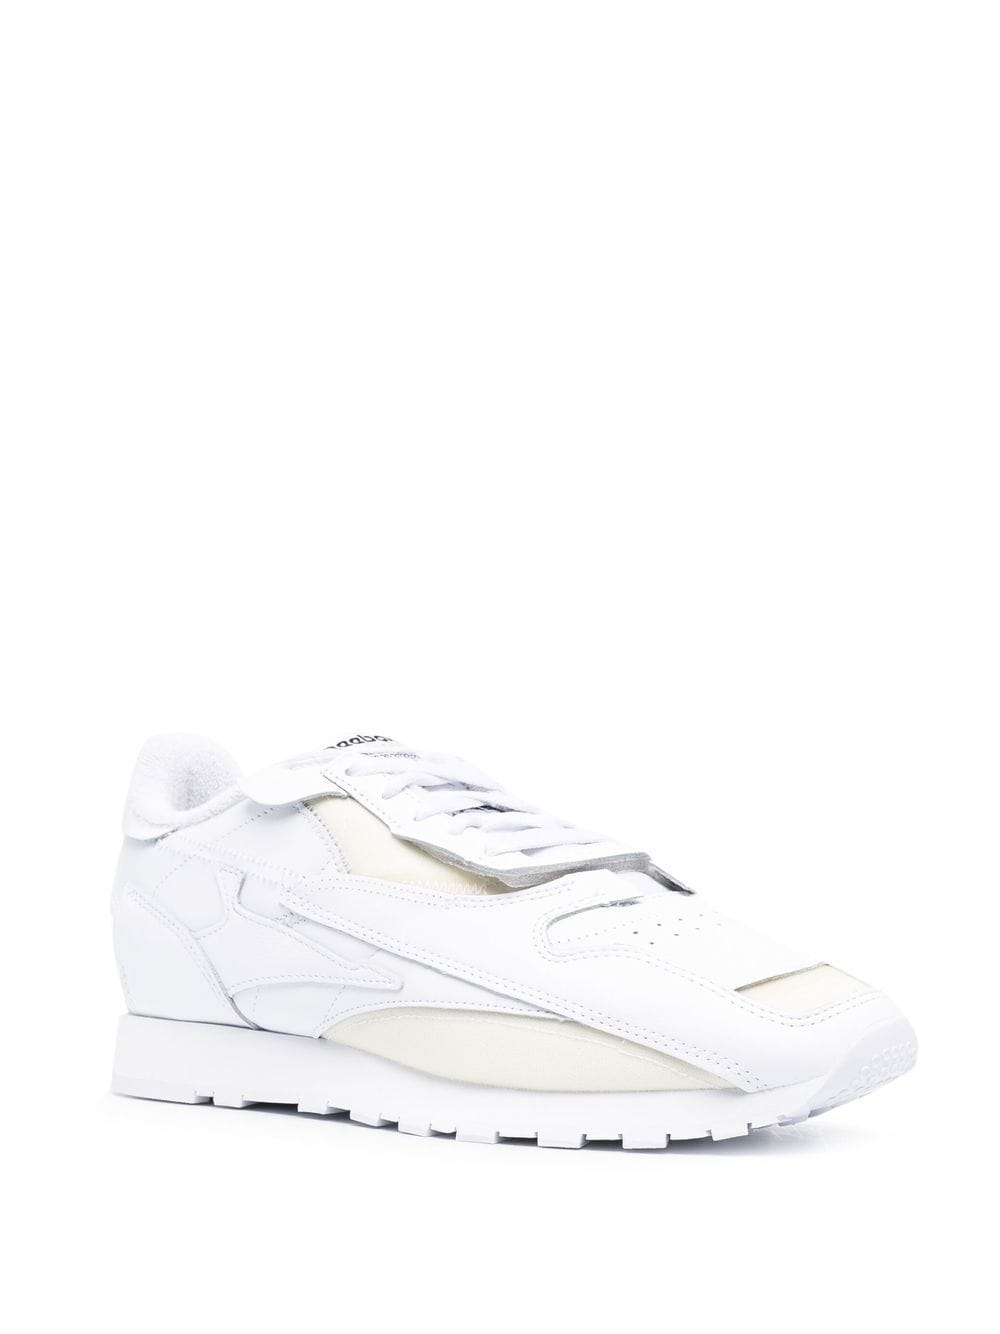 Maison Margiela x Reebok Sneakers white 